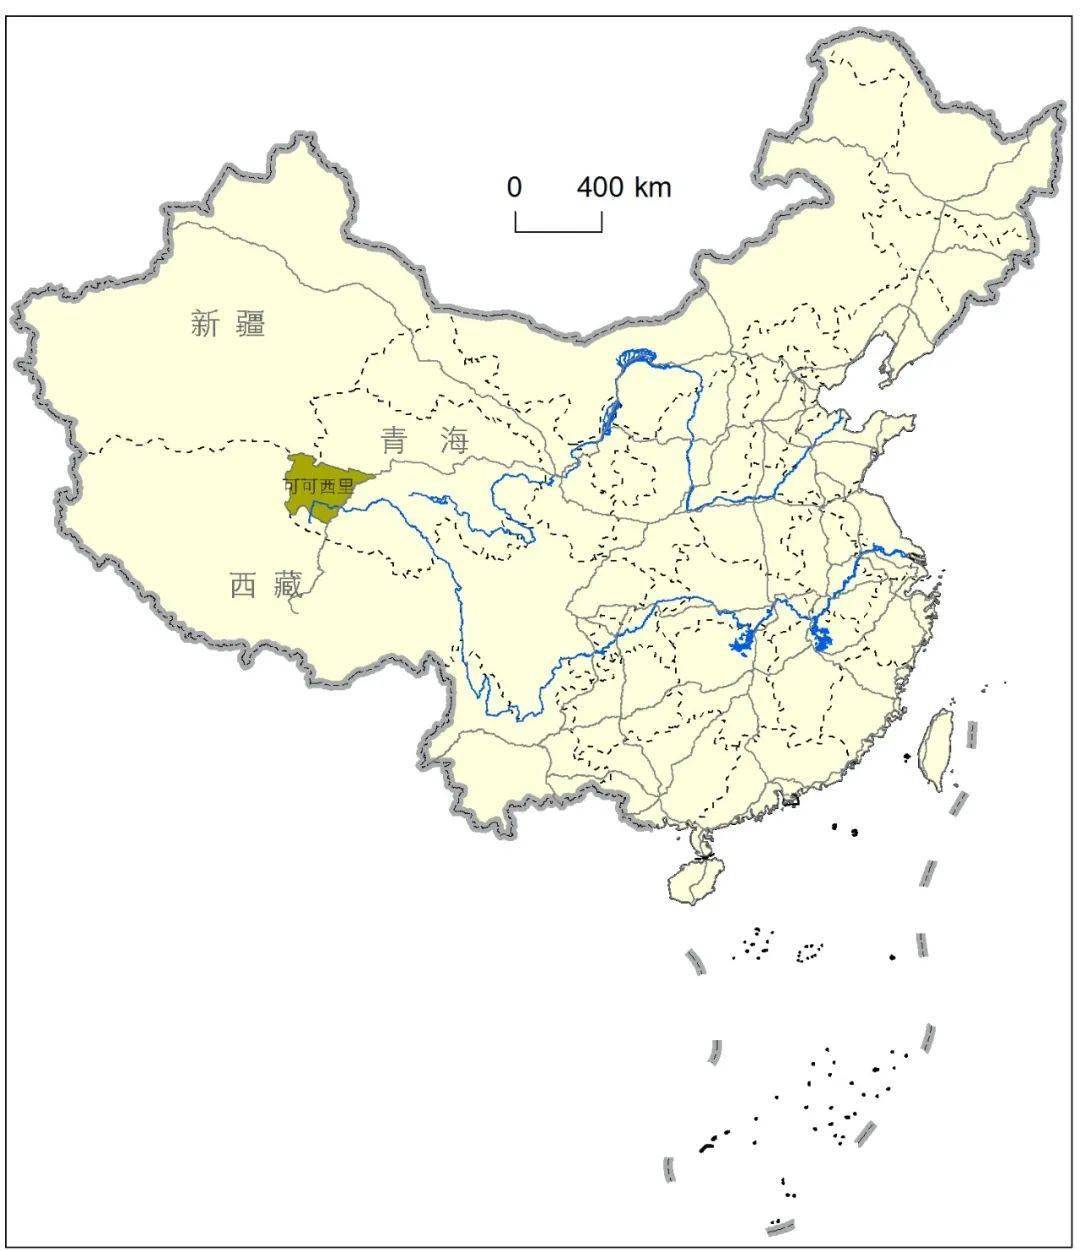 位于中国  青海省西南角,昆仑山和唐古拉山之间,青藏公路以西,面积3.